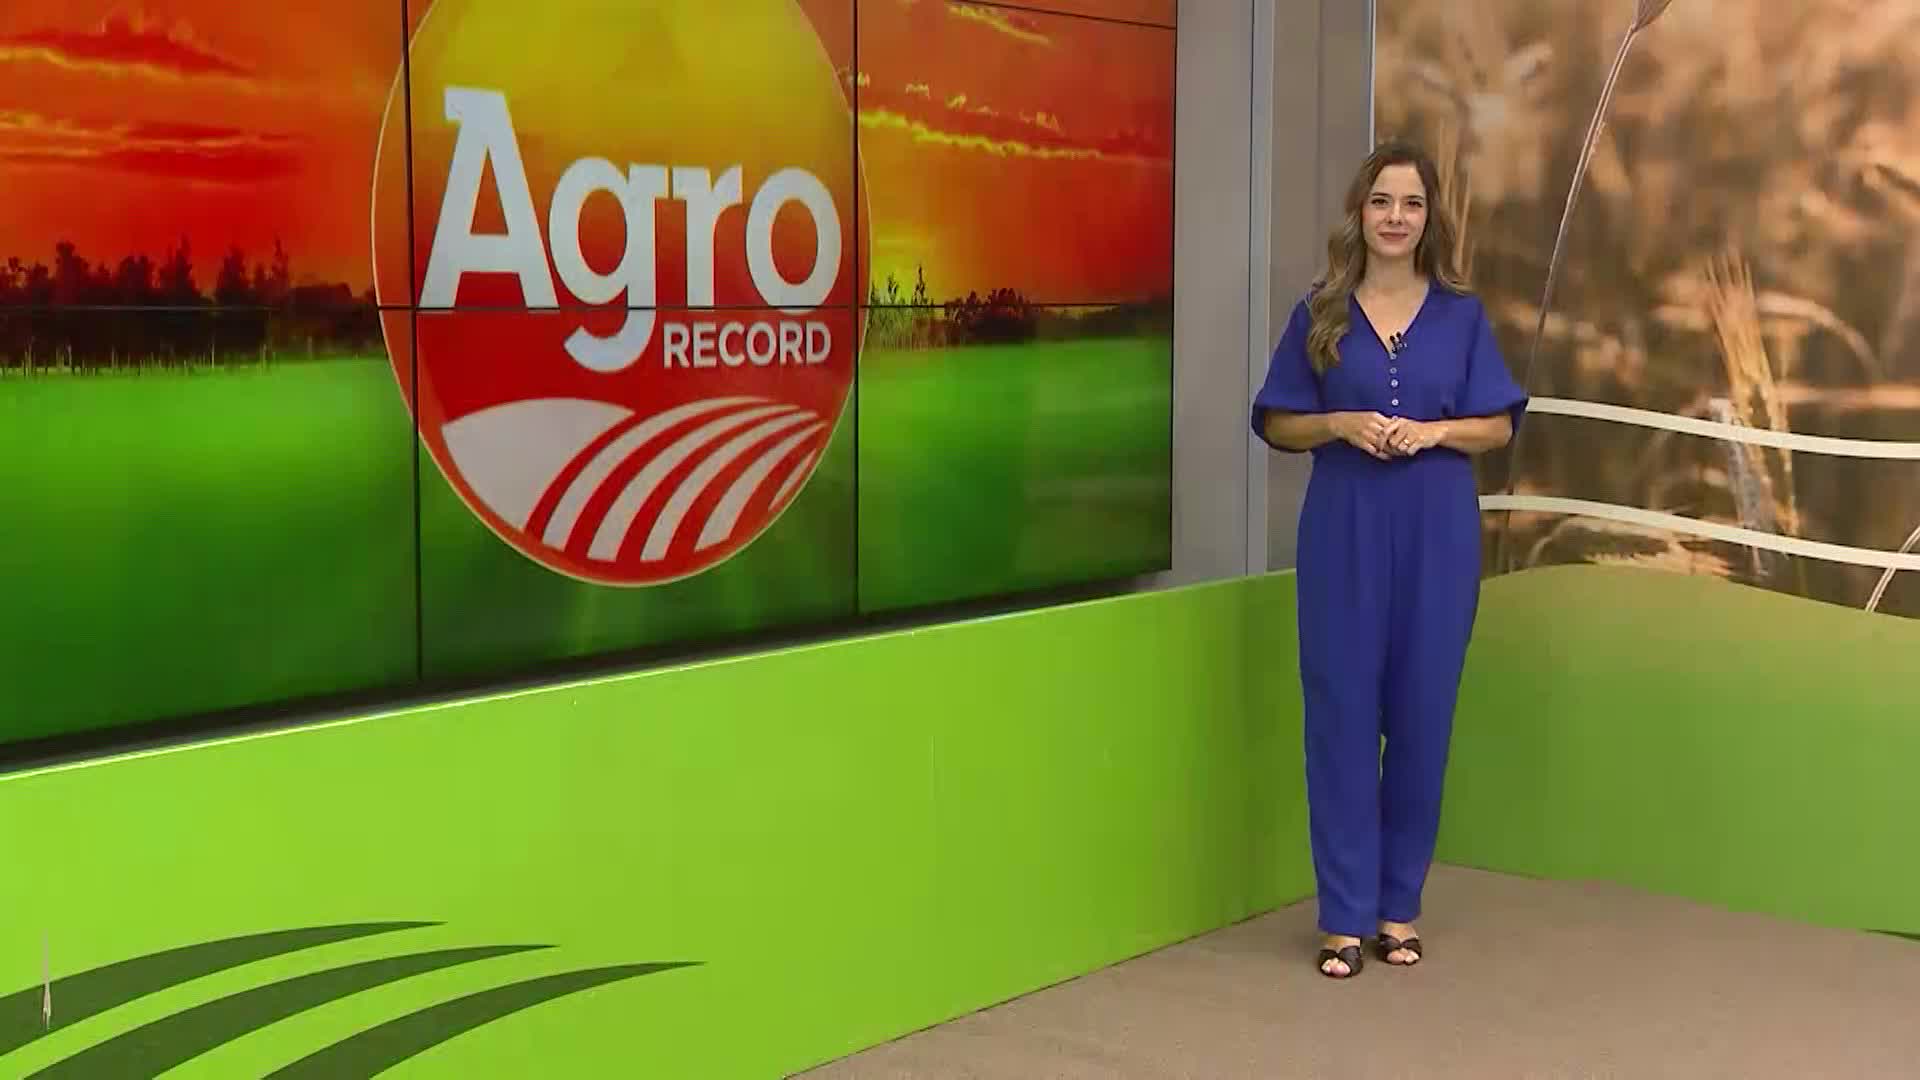 Vídeo: Veja a íntegra do Agro Record DF deste domingo (3)